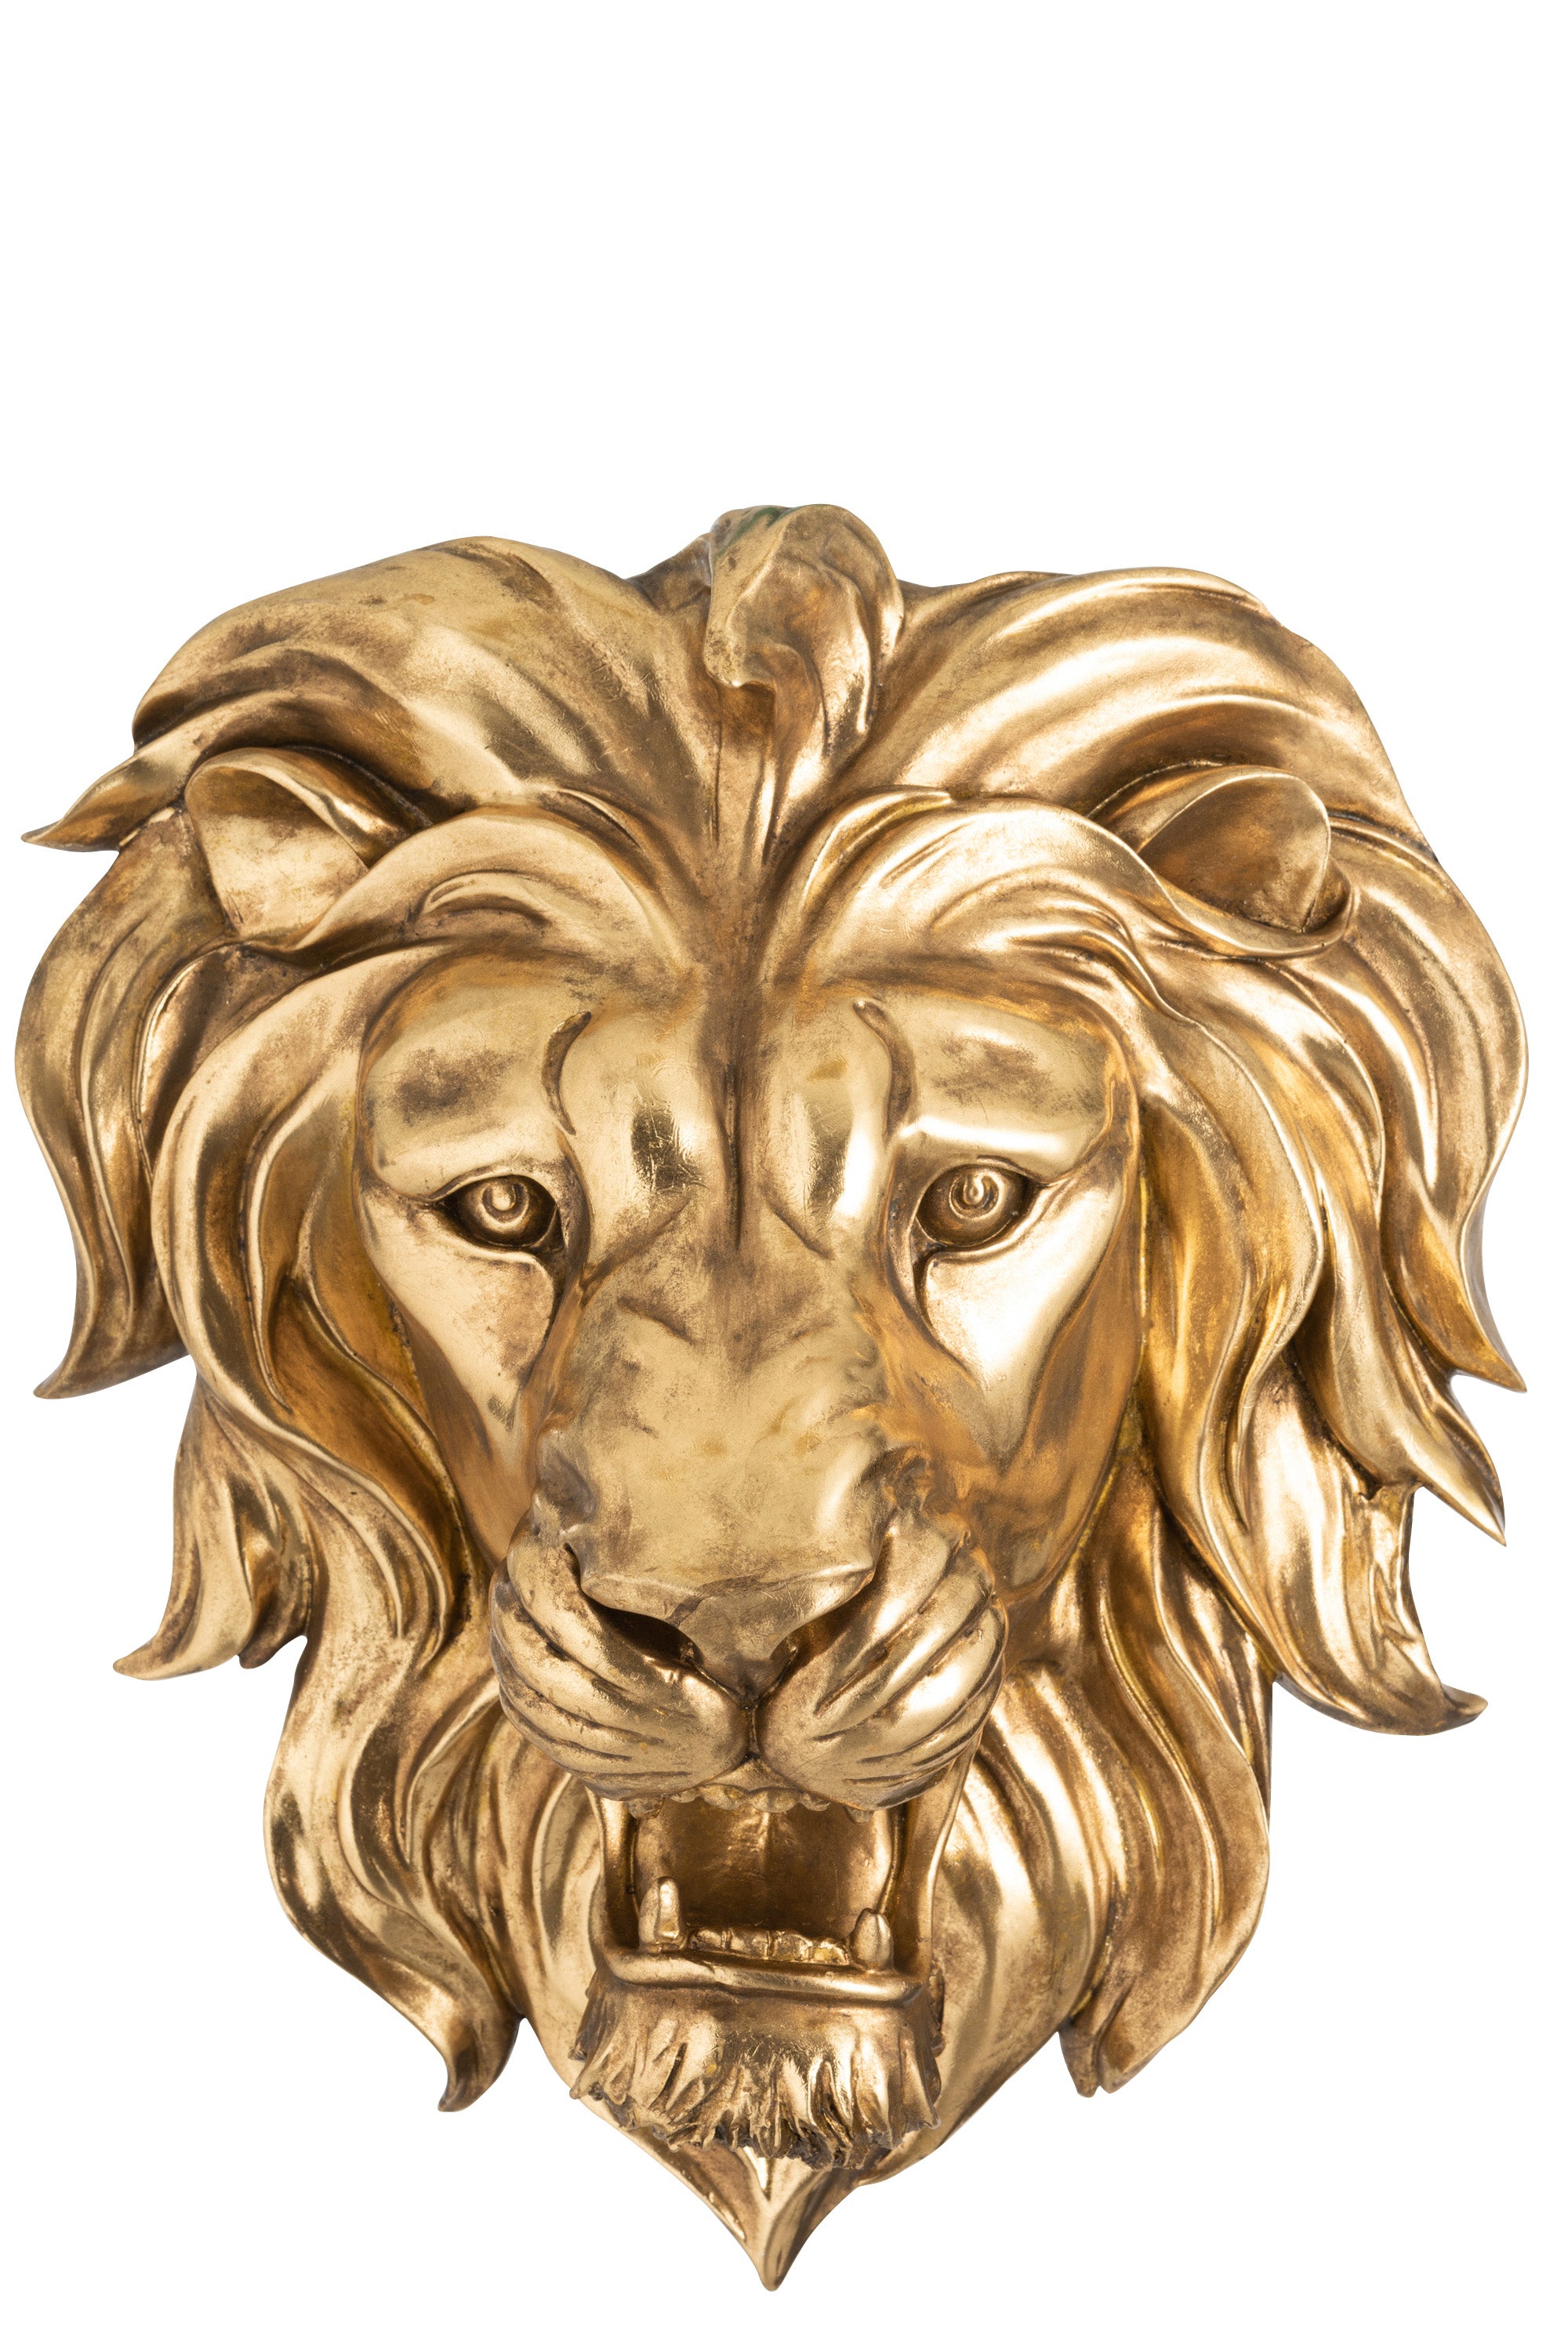 Goldener Löwenkopf mit aufgerissenem Maul als Wanddekoration.